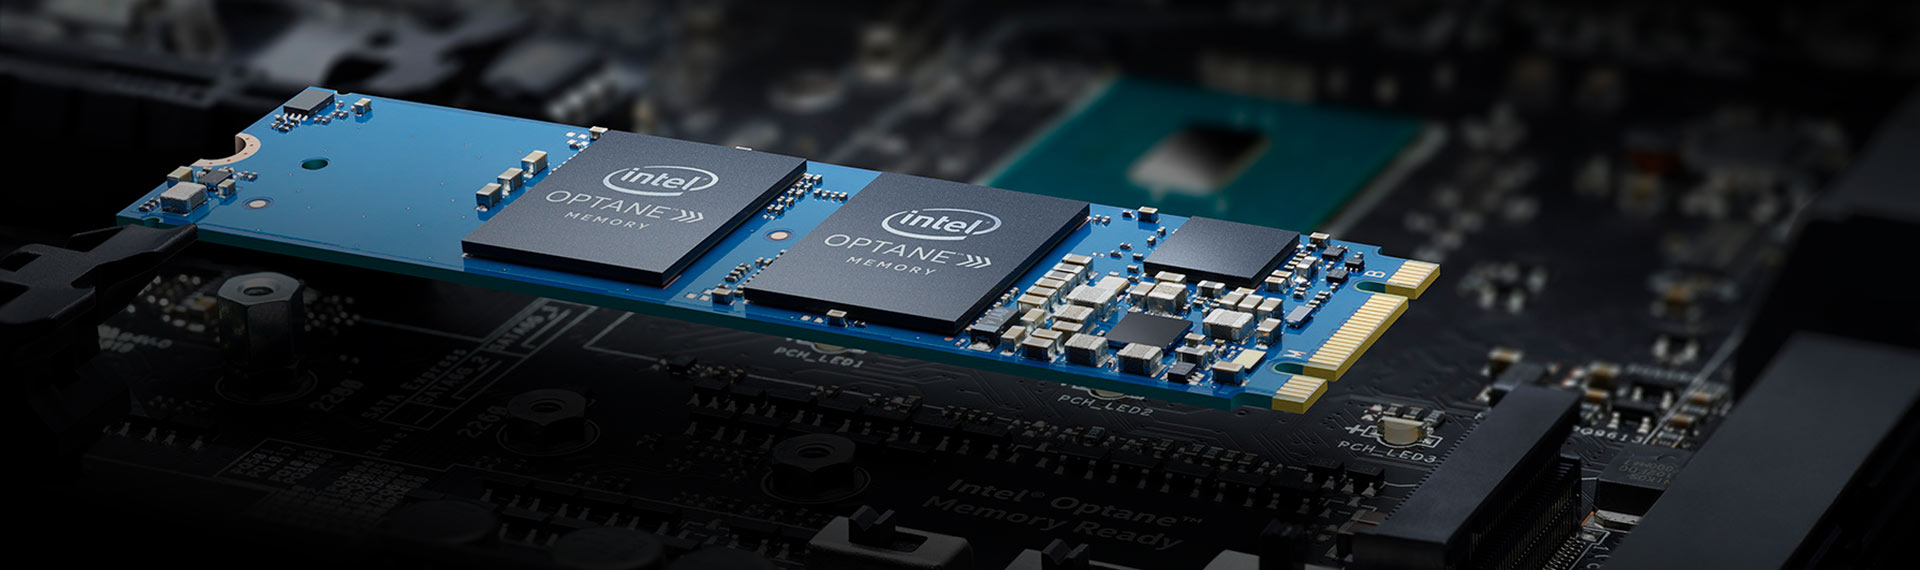 Mengenal Intel® Optane™ untuk Cara Kerja PC 5 Kali Lebih Cepat!